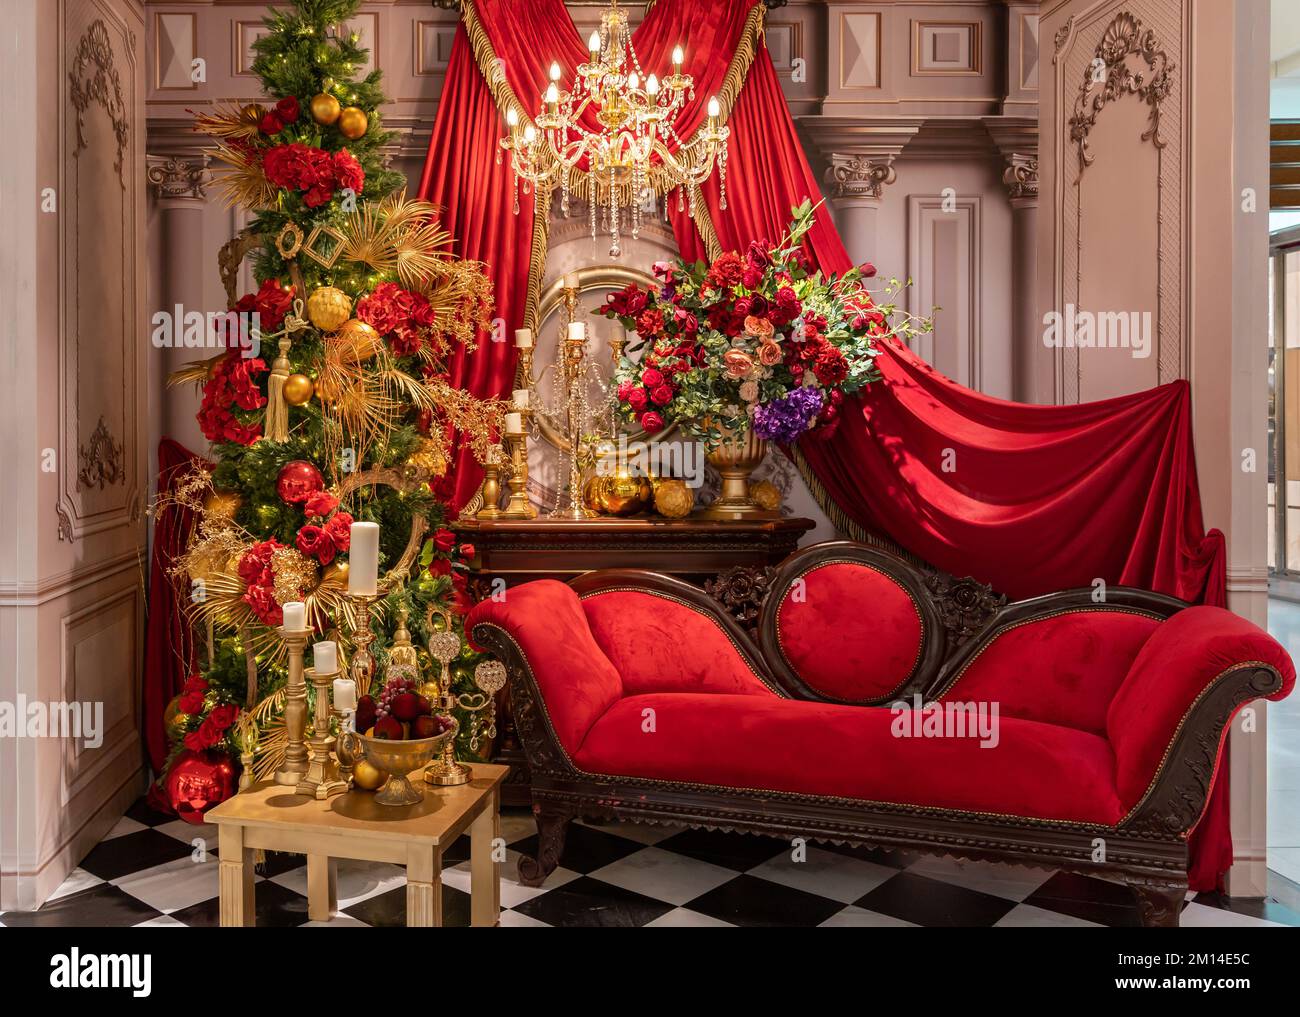 Décoration de Noël avec chaise rouge, fleurs colorées et bougies en arrière-plan. Banque D'Images